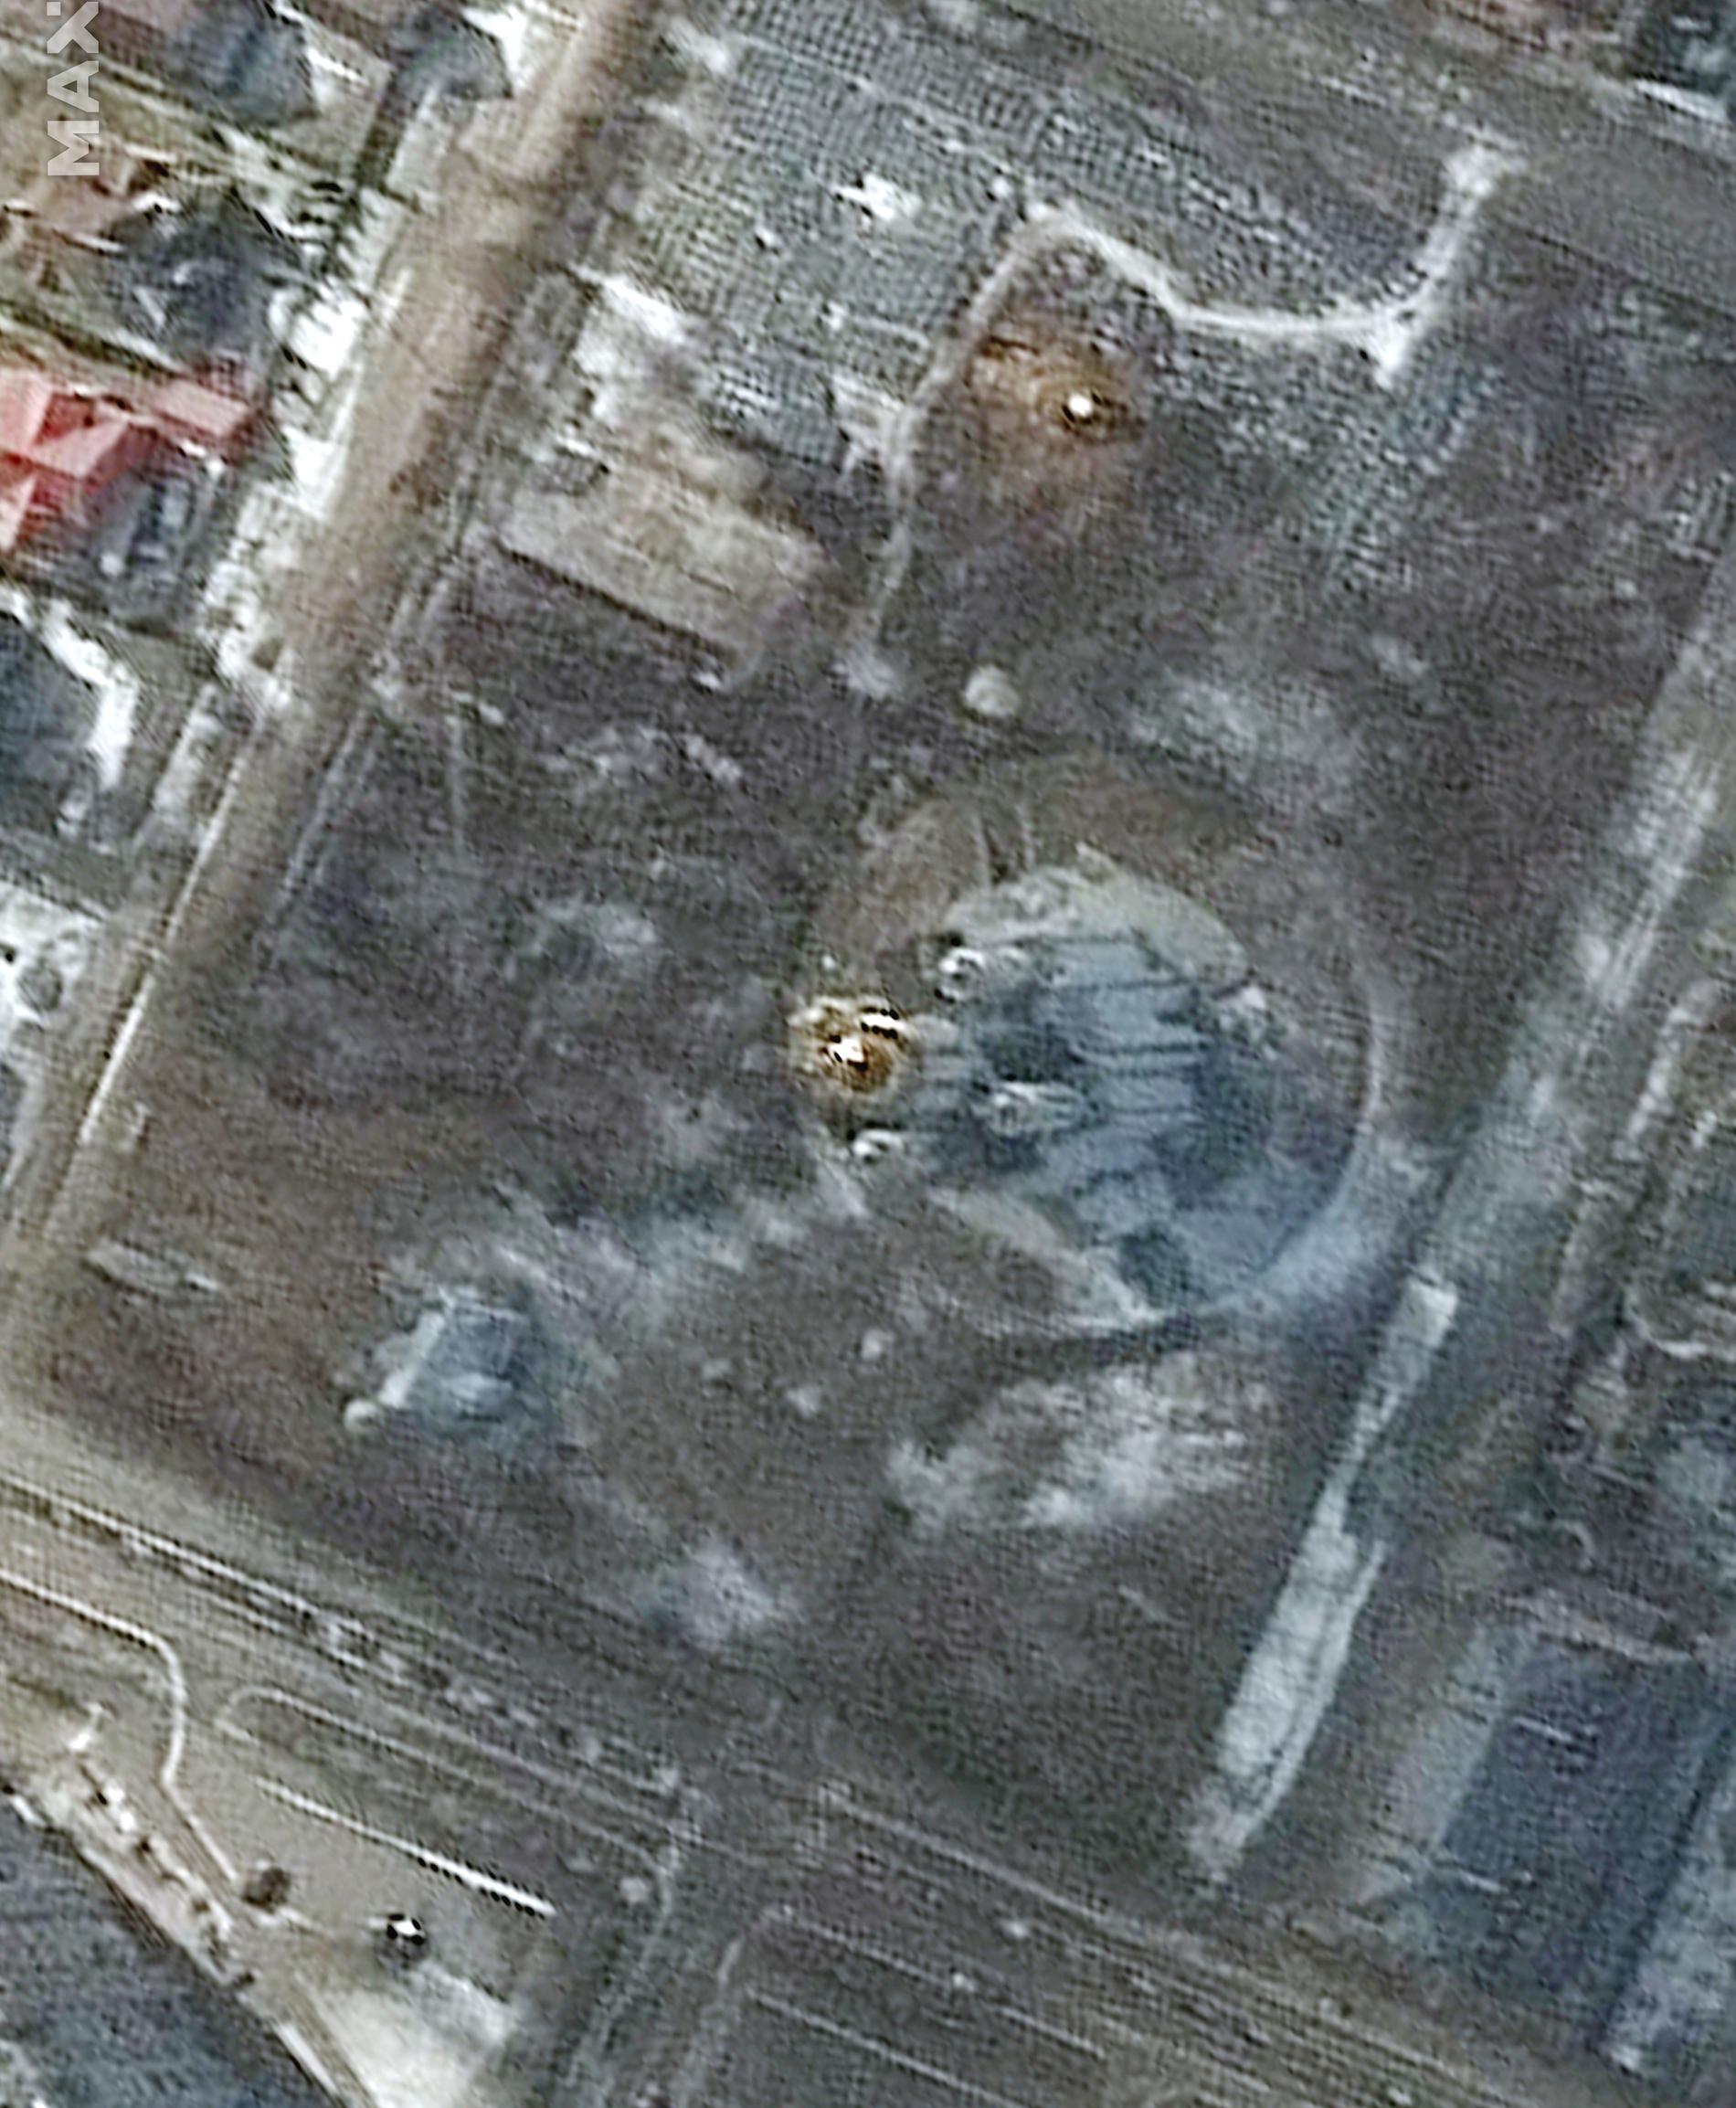 På en satellitbild från den 10 mars syns en mindre grop ovanför kyrkan.